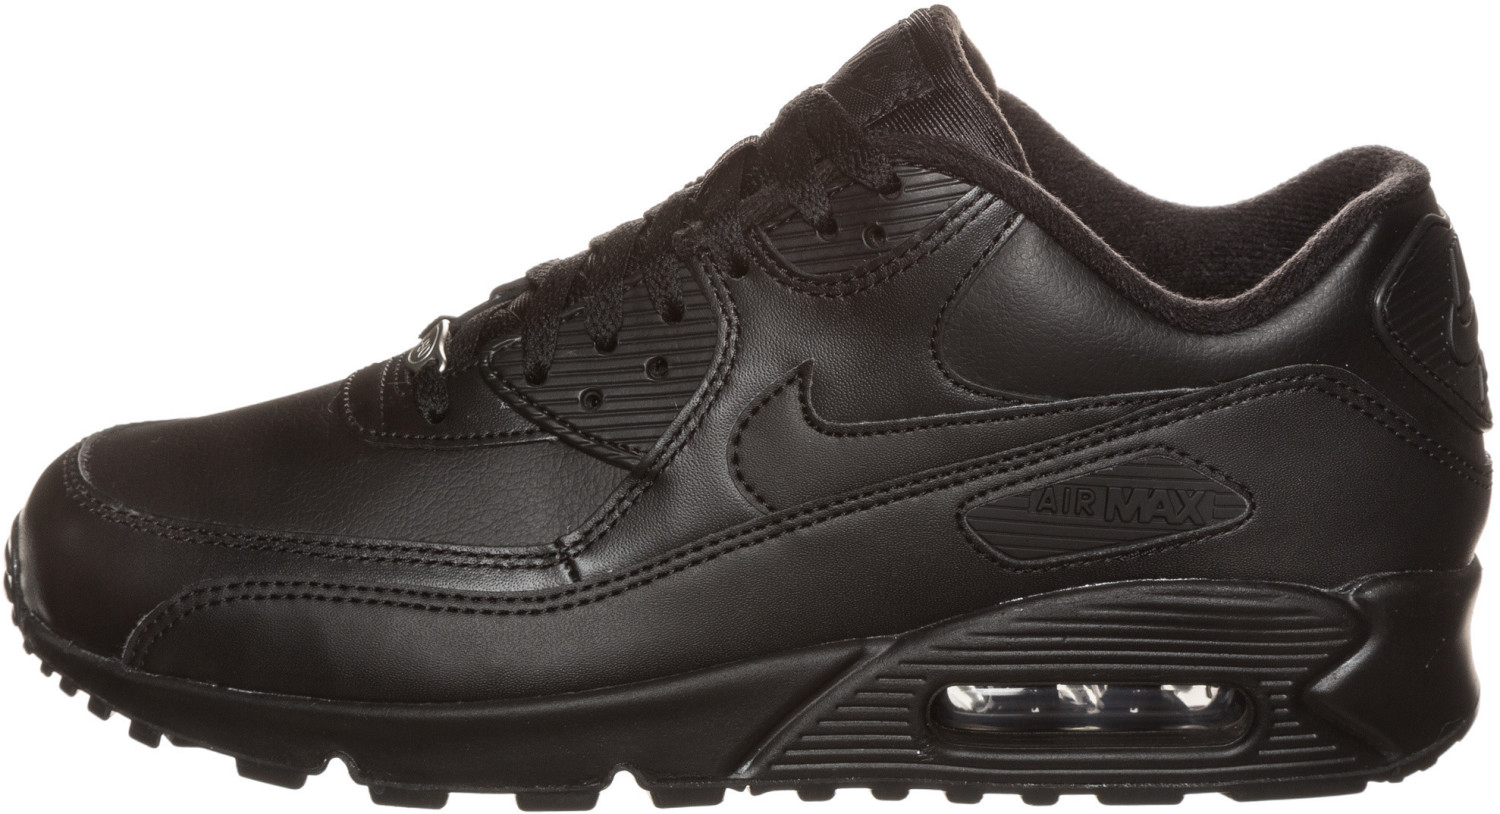 Nike Air Max 90 Leather a € 150,00 (oggi) | Migliori prezzi e ...